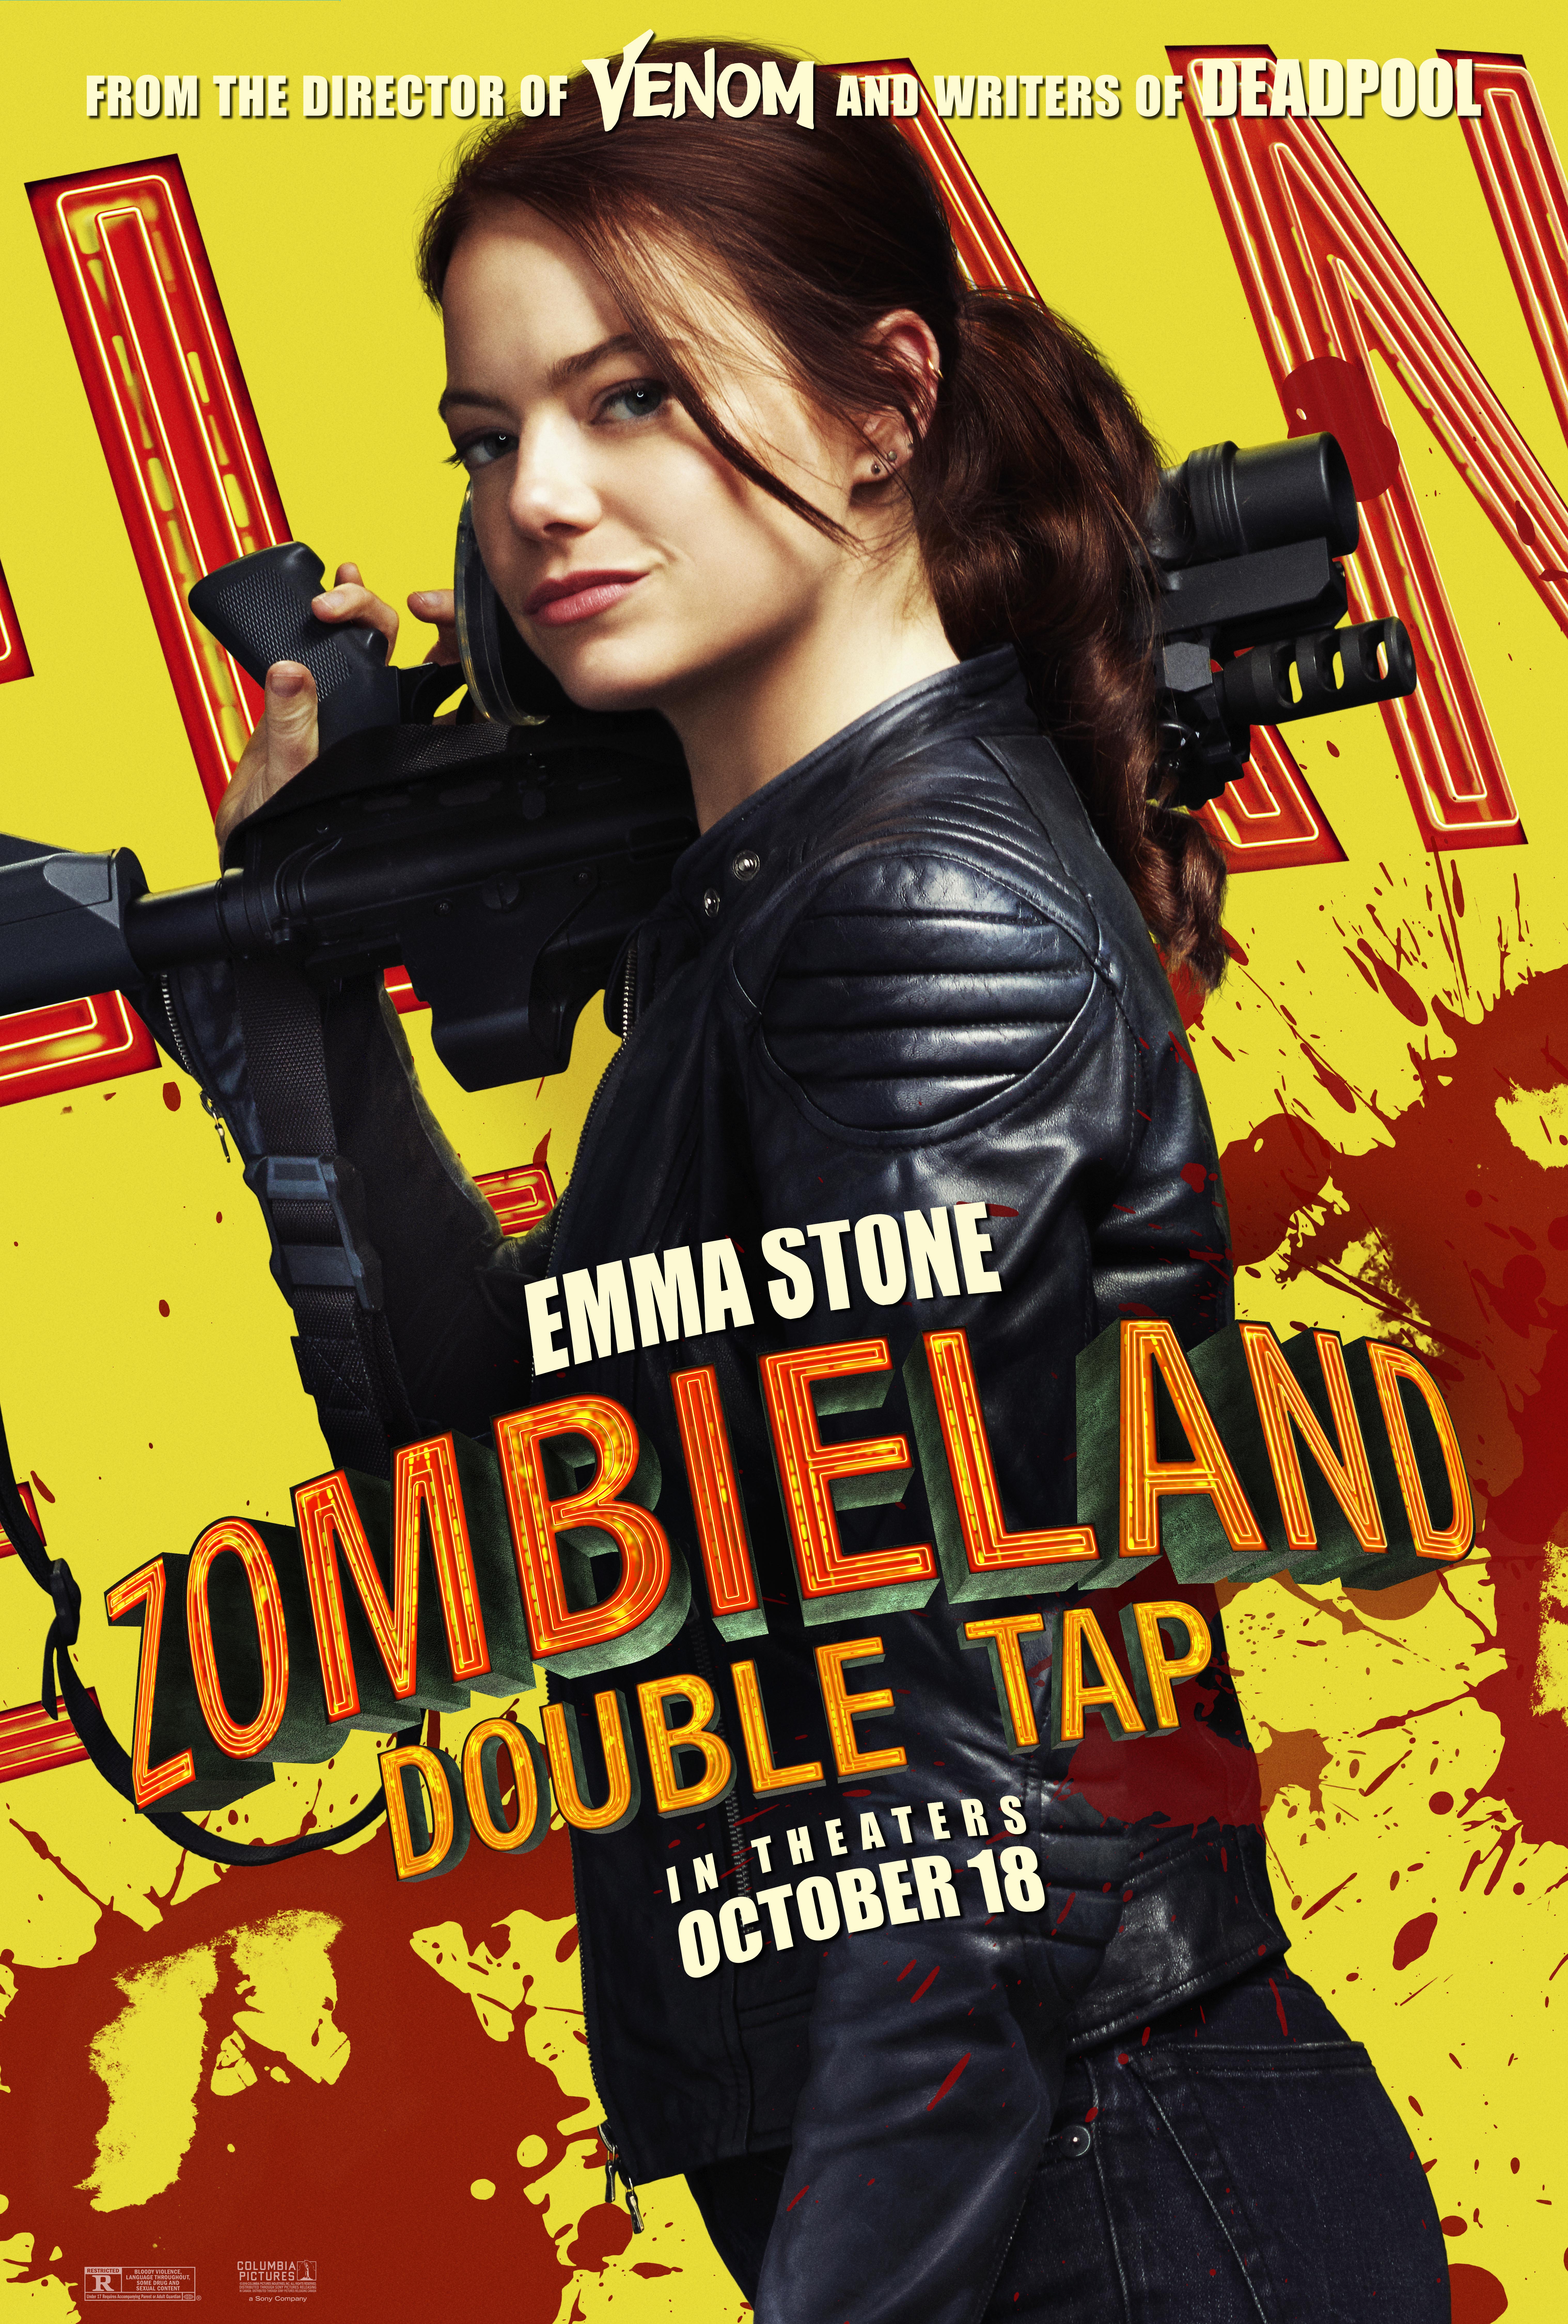 Emma Watson In Zombieland 2 Wallpapers